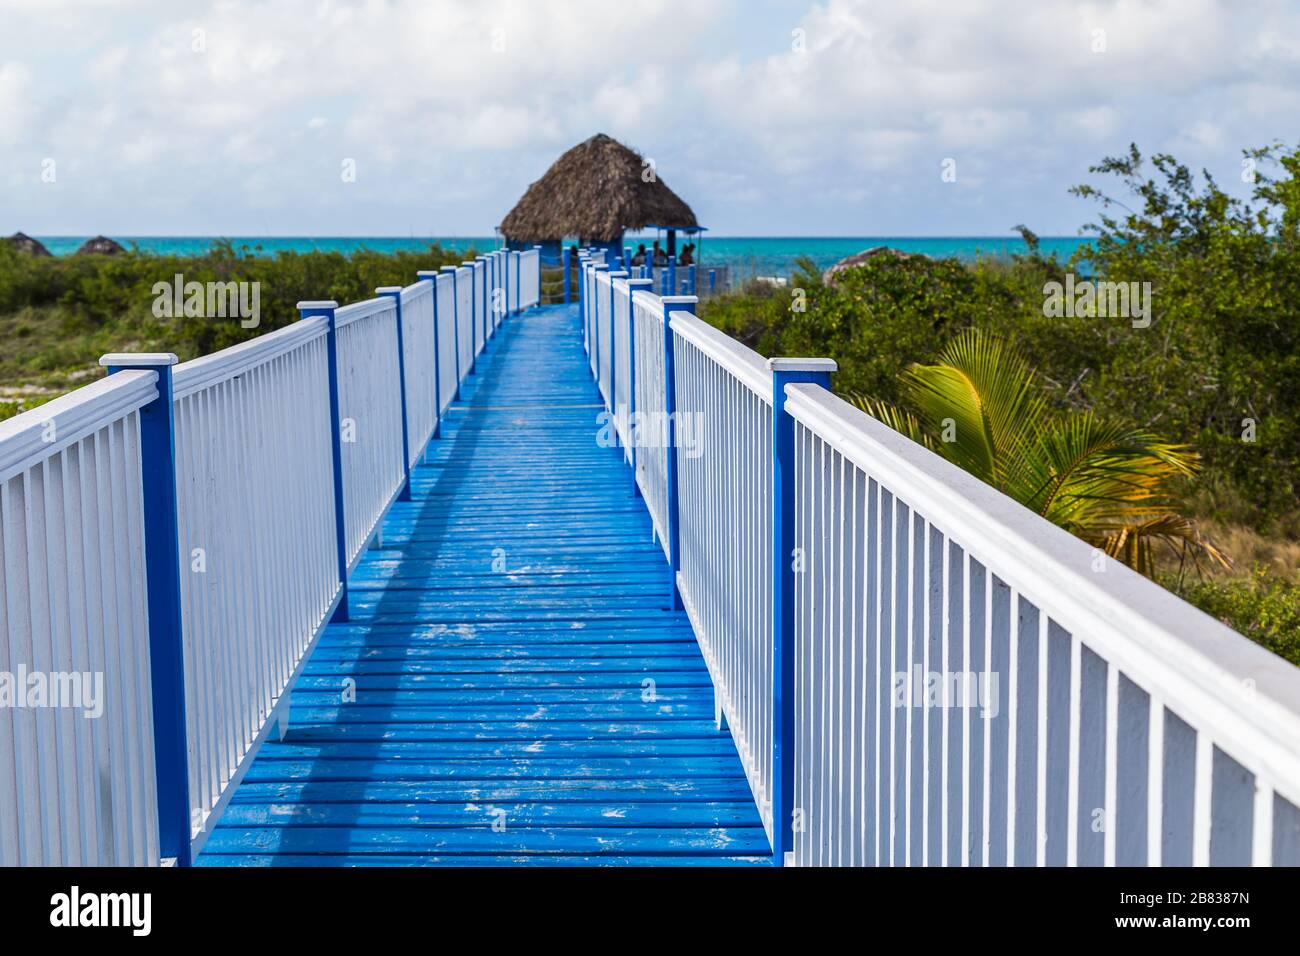 En regardant un passage en bois surélevé vers Playa Pilar, l'une des plus belles plages de Cuba. Banque D'Images